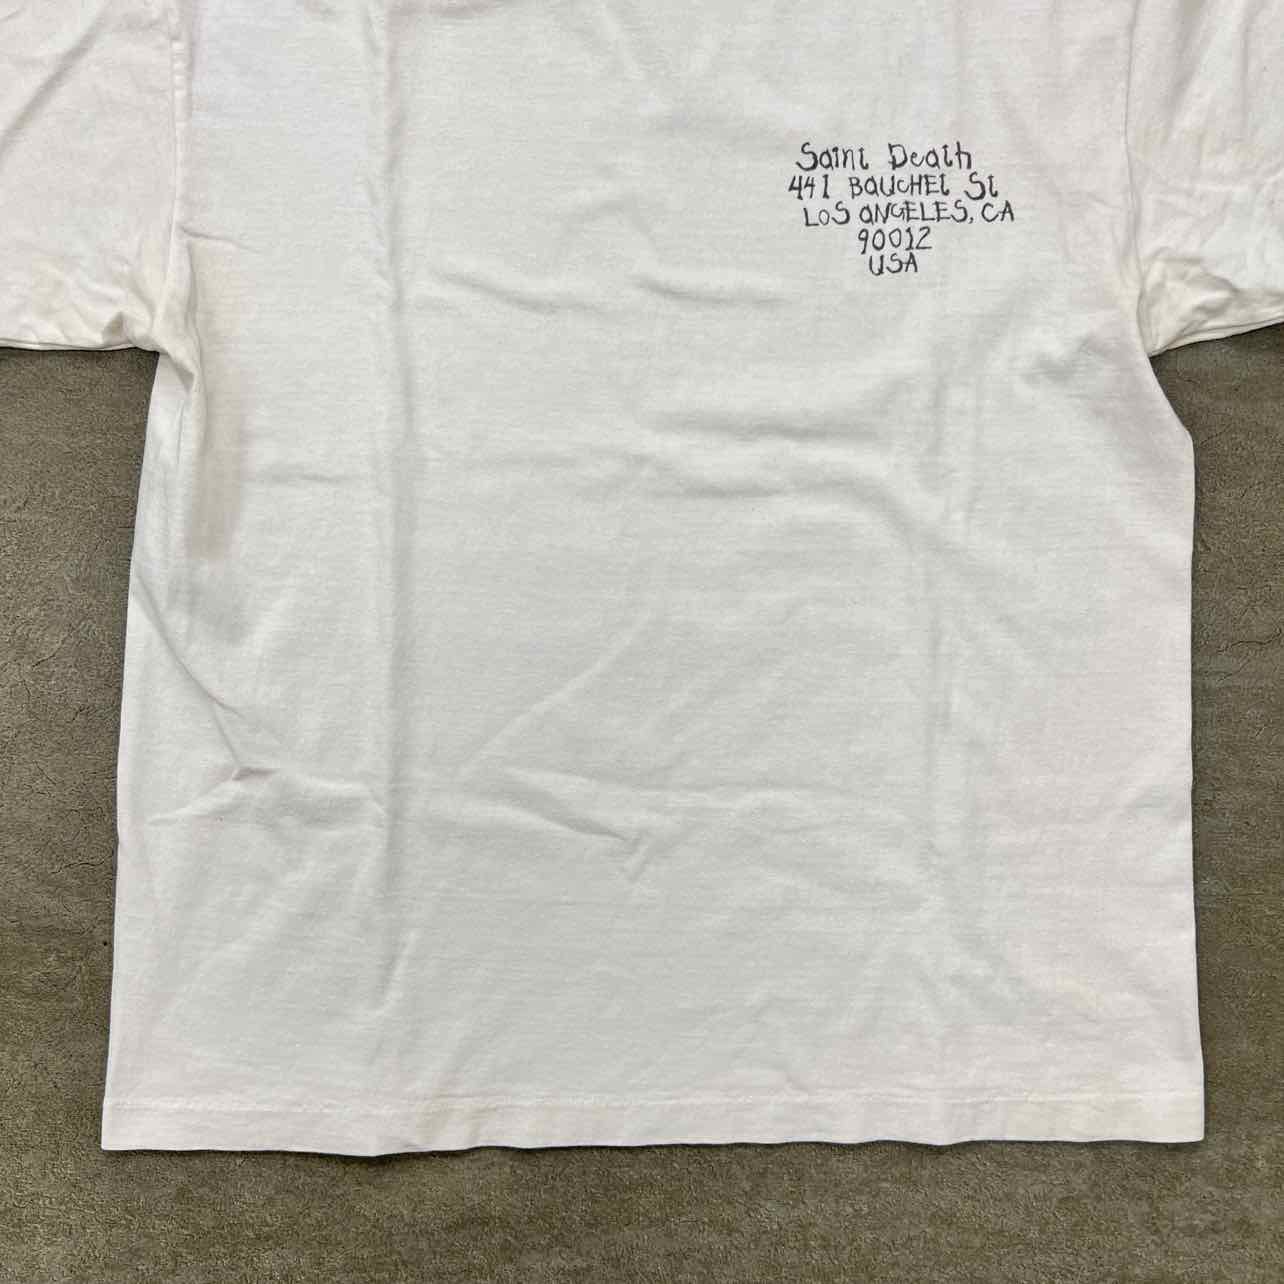 Saint Michael T-Shirt &quot;SAINT DEATH&quot; Cream Used Size L